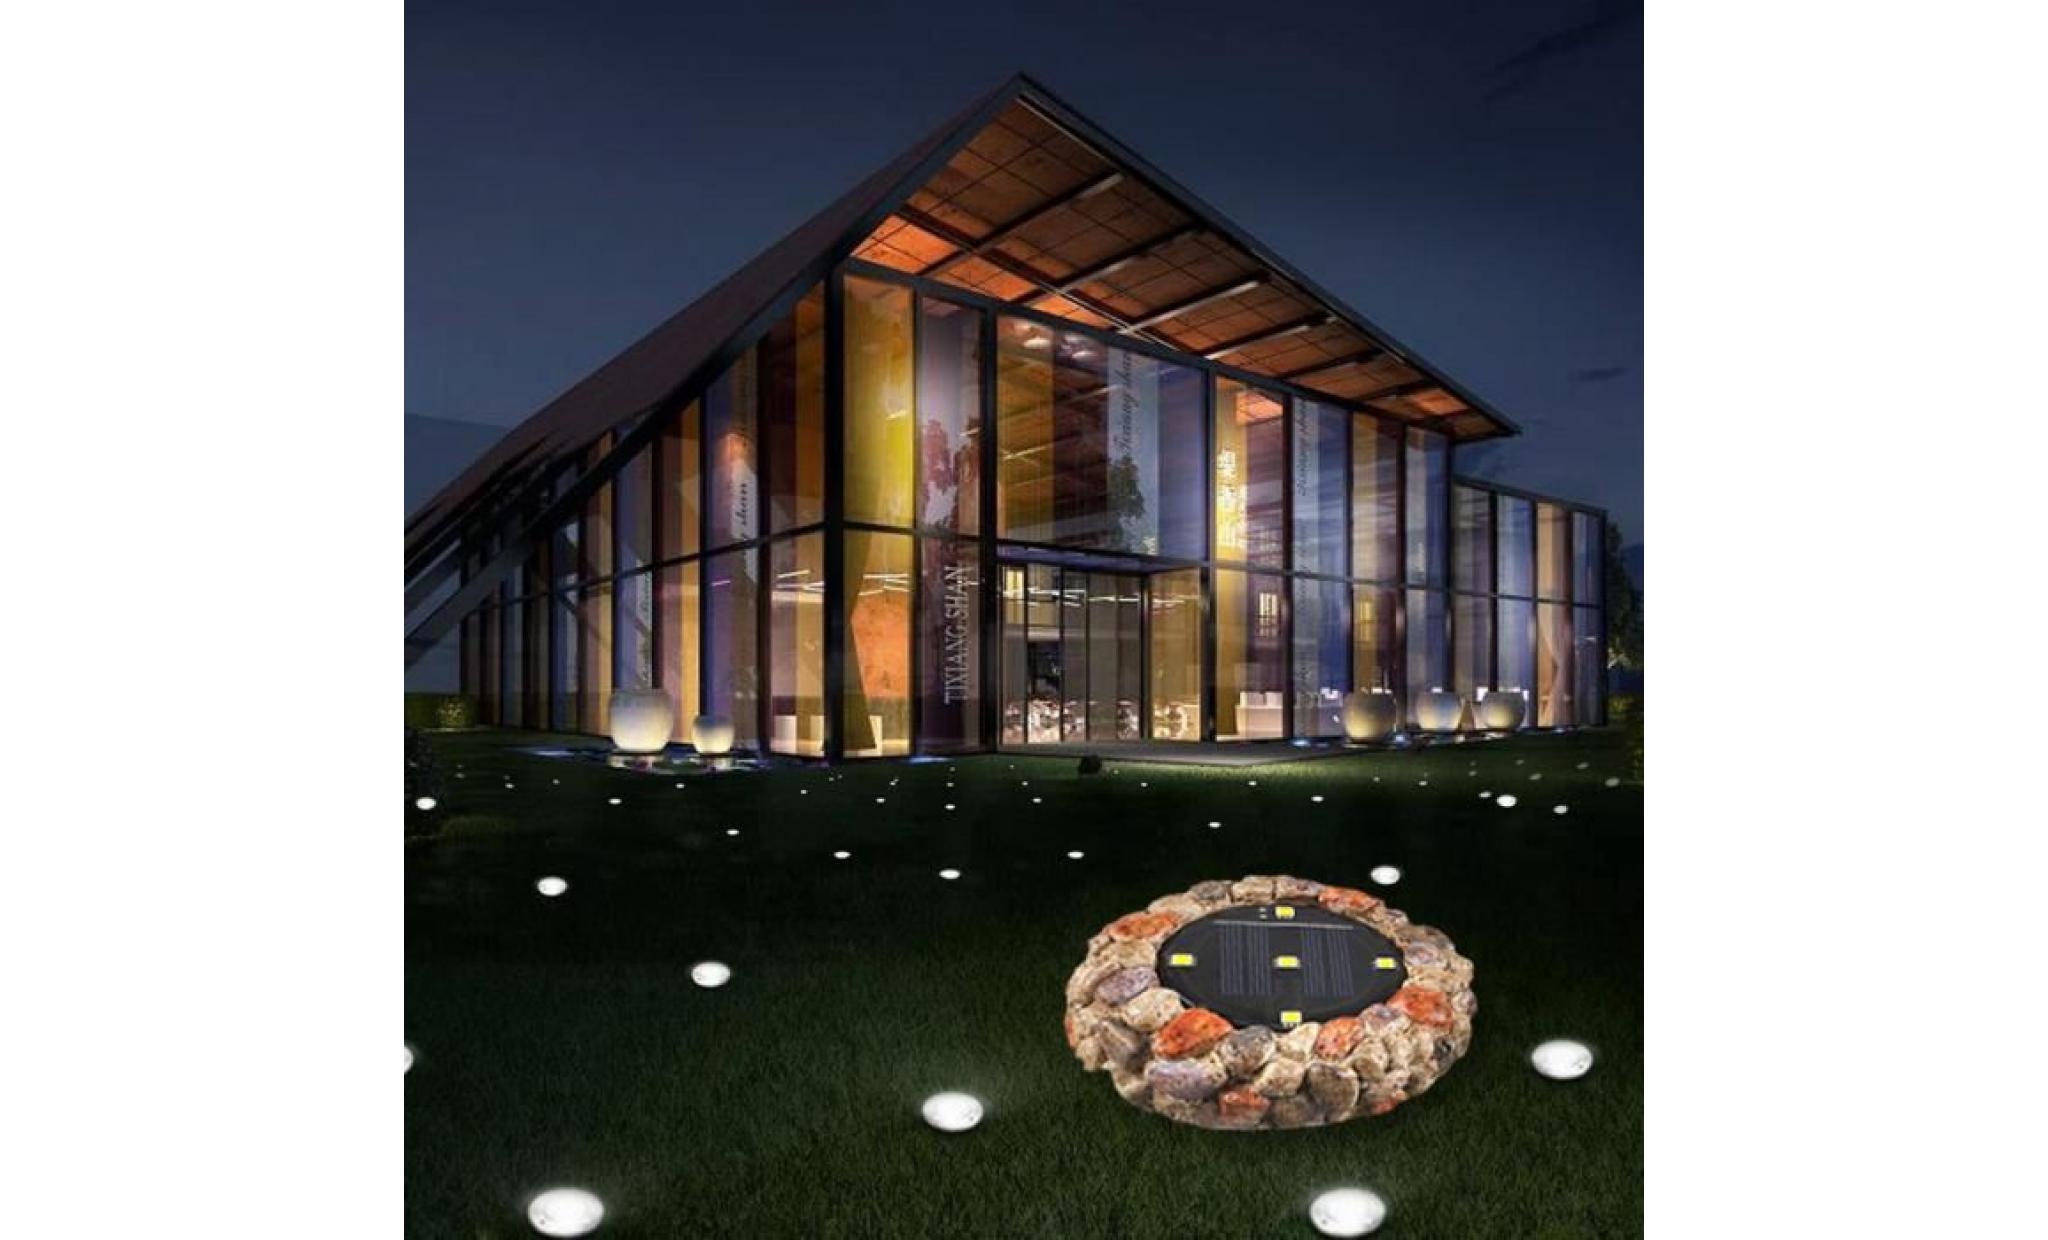 nouvelle lumière solaire souterrain étanche à l'eau 5led imitation pierre insérée lampe d'herbe jardin jardin a lpp80808943a_666